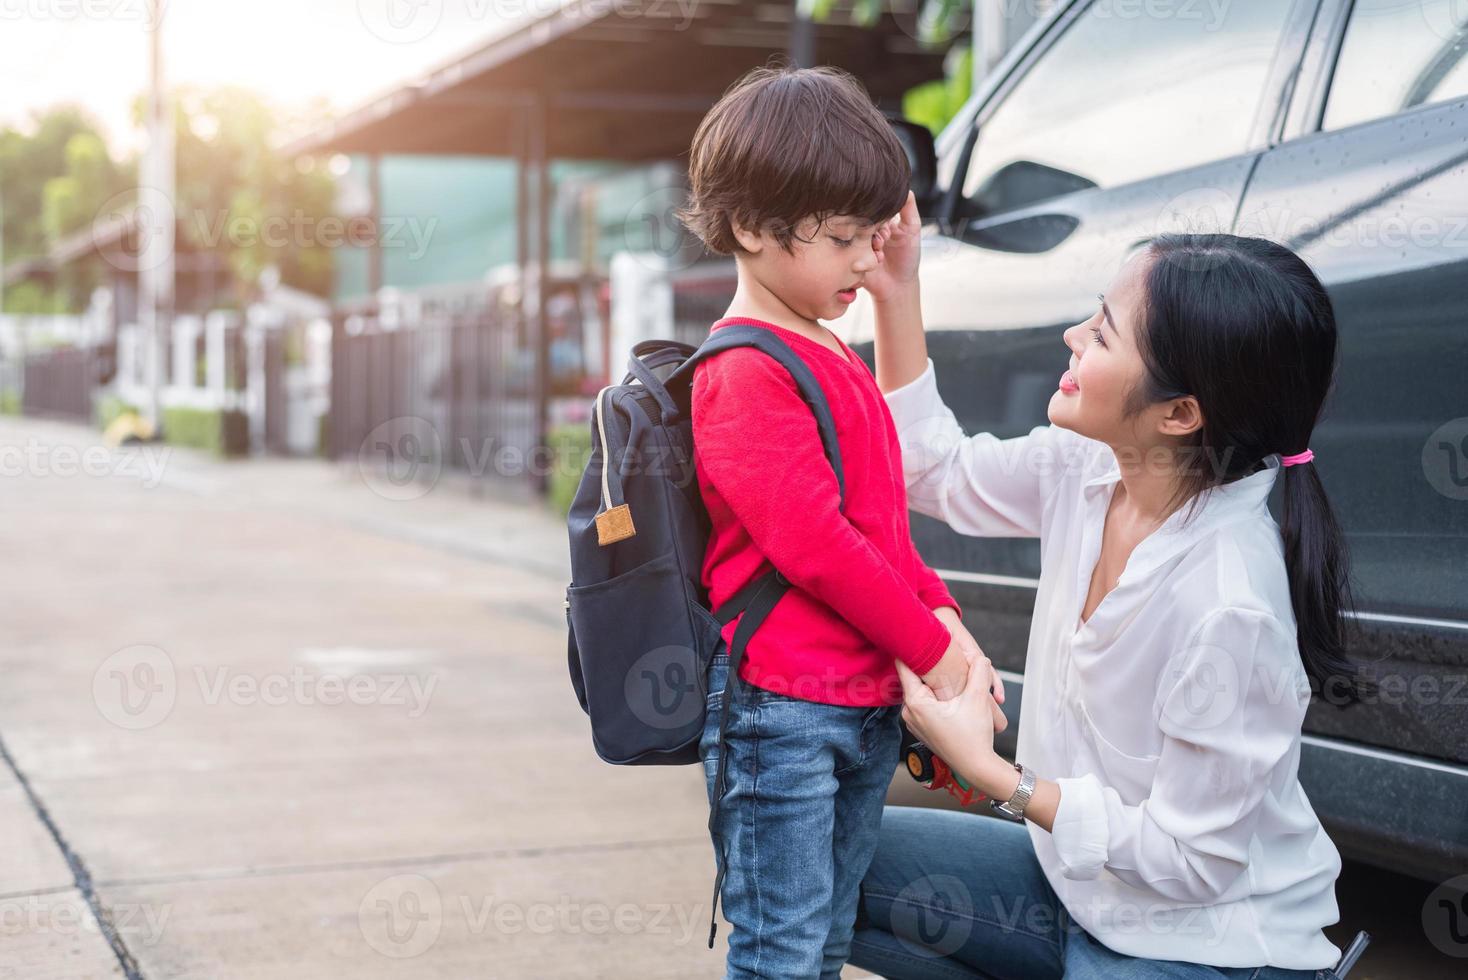 mamma förbereder sig för att skicka tillbaka sina barn till skolan i bilen på morgonen. utbildning och tillbaka till skolan koncept. glad familj och kärlek till människor tema foto